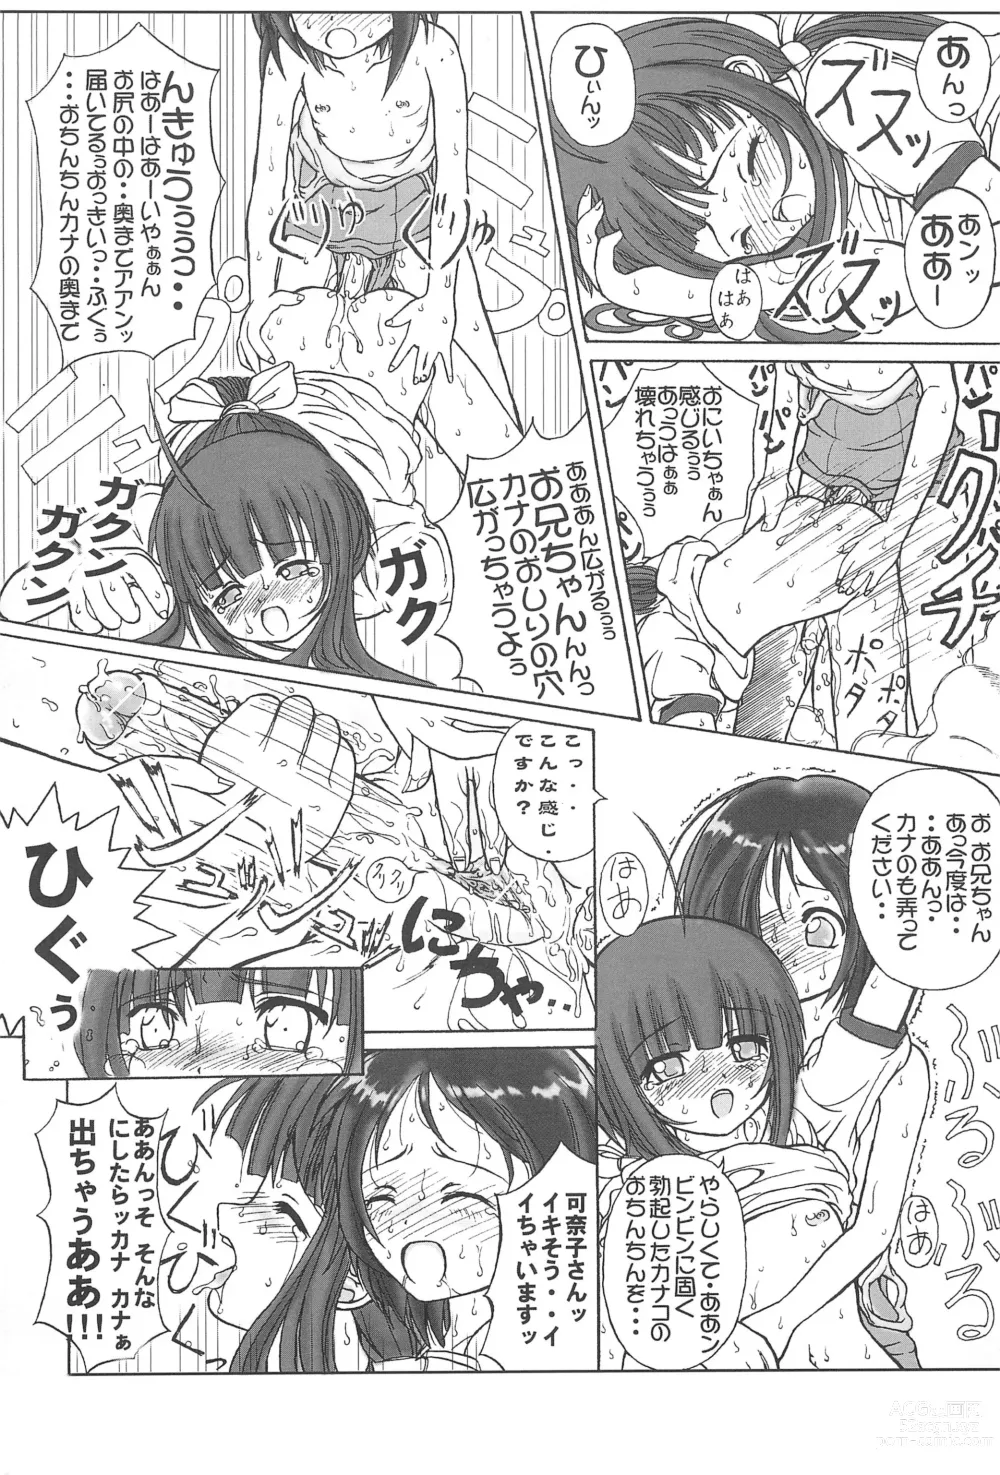 Page 25 of doujinshi Petachin 03